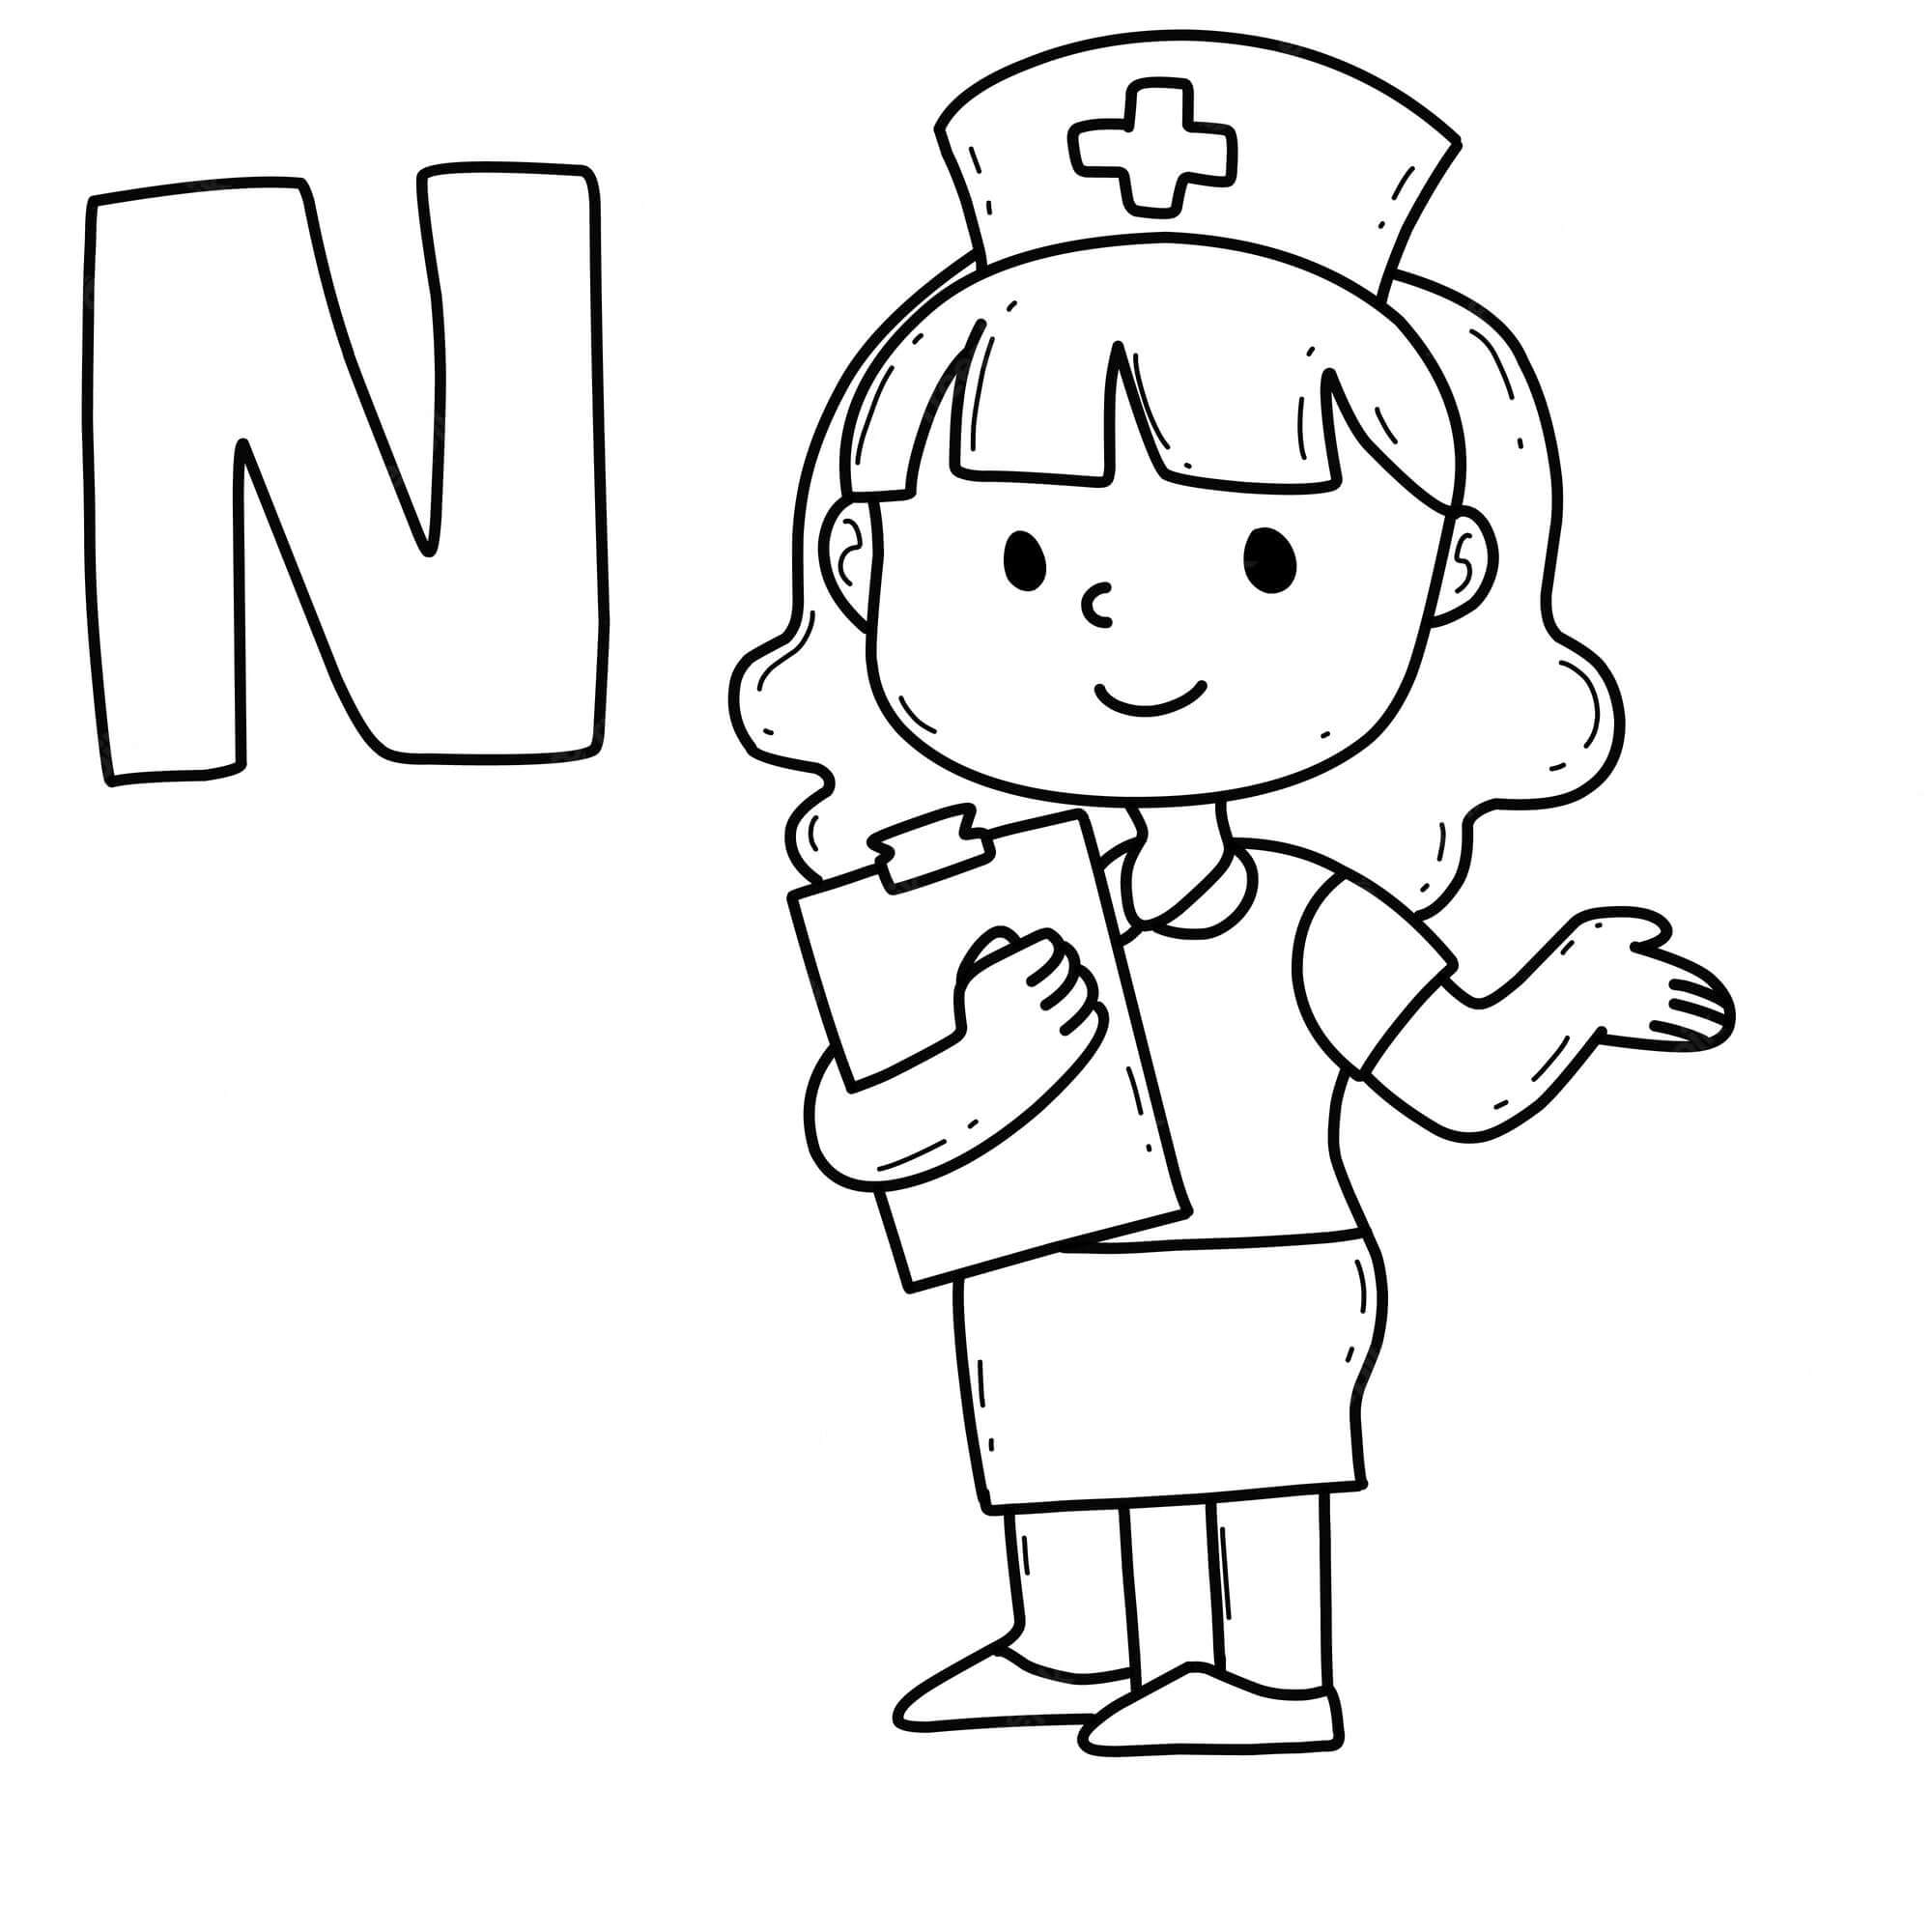 Buchstabe N mit Krankenschwester